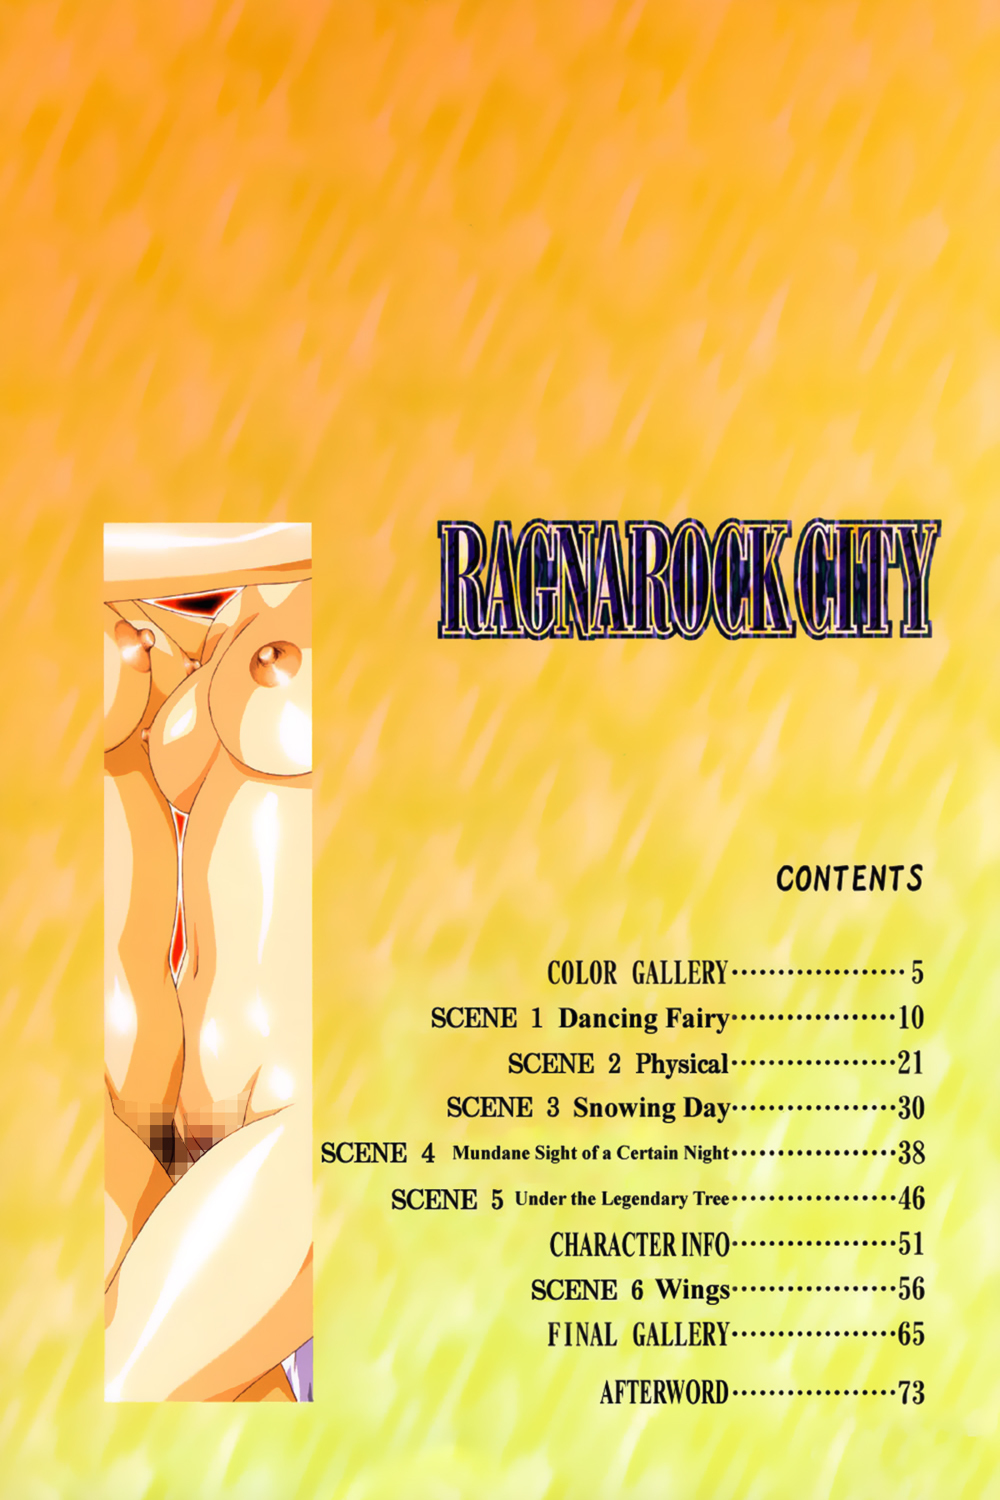 [Satoshi Urushihara] Ragnarock City [English] page 4 full